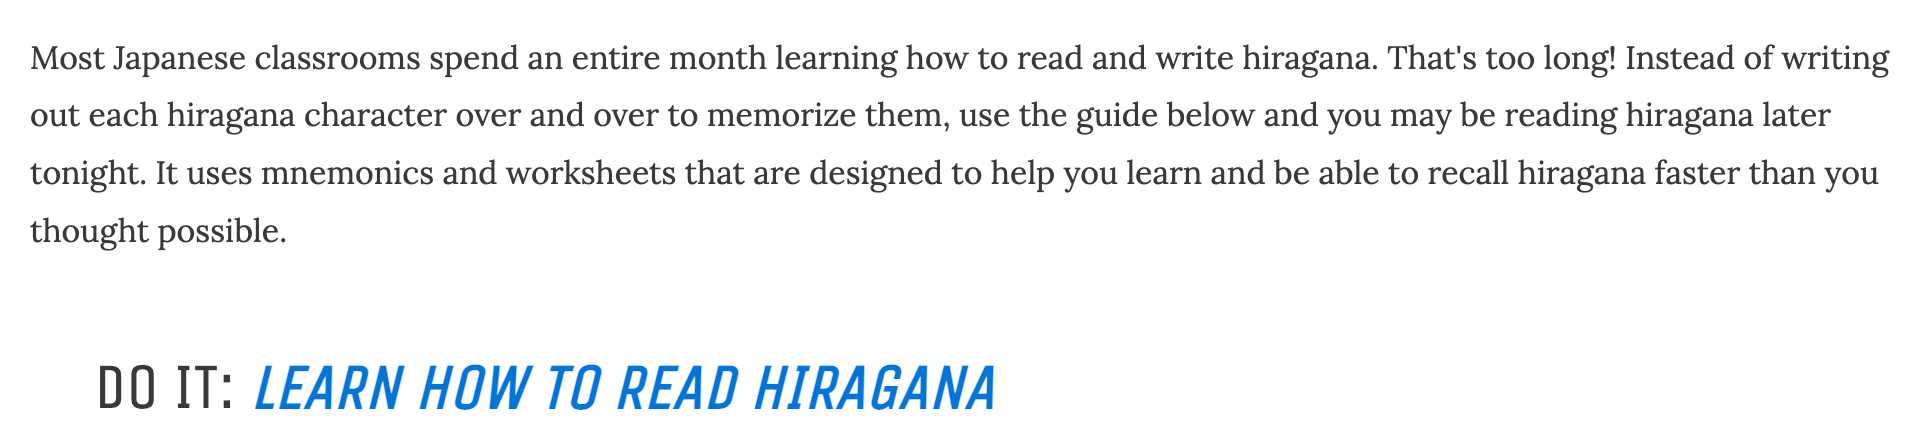 Kullanıcıyı bir sonraki hiragana okumayı öğrenme görevine yönlendirmeye teşvik eden CTA